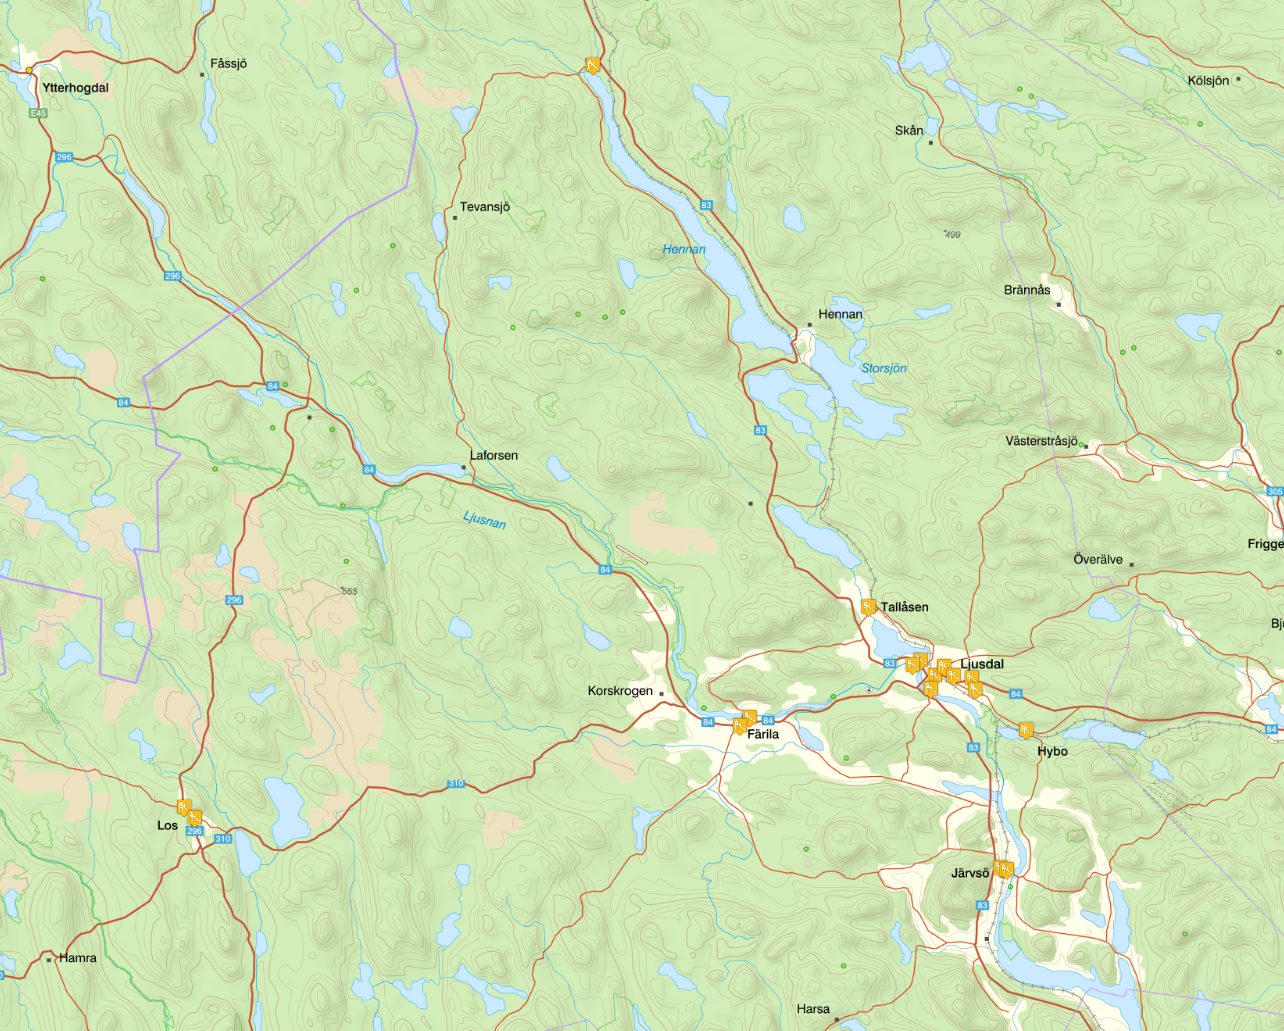 Kartbild på lekplatser via cx-kartan